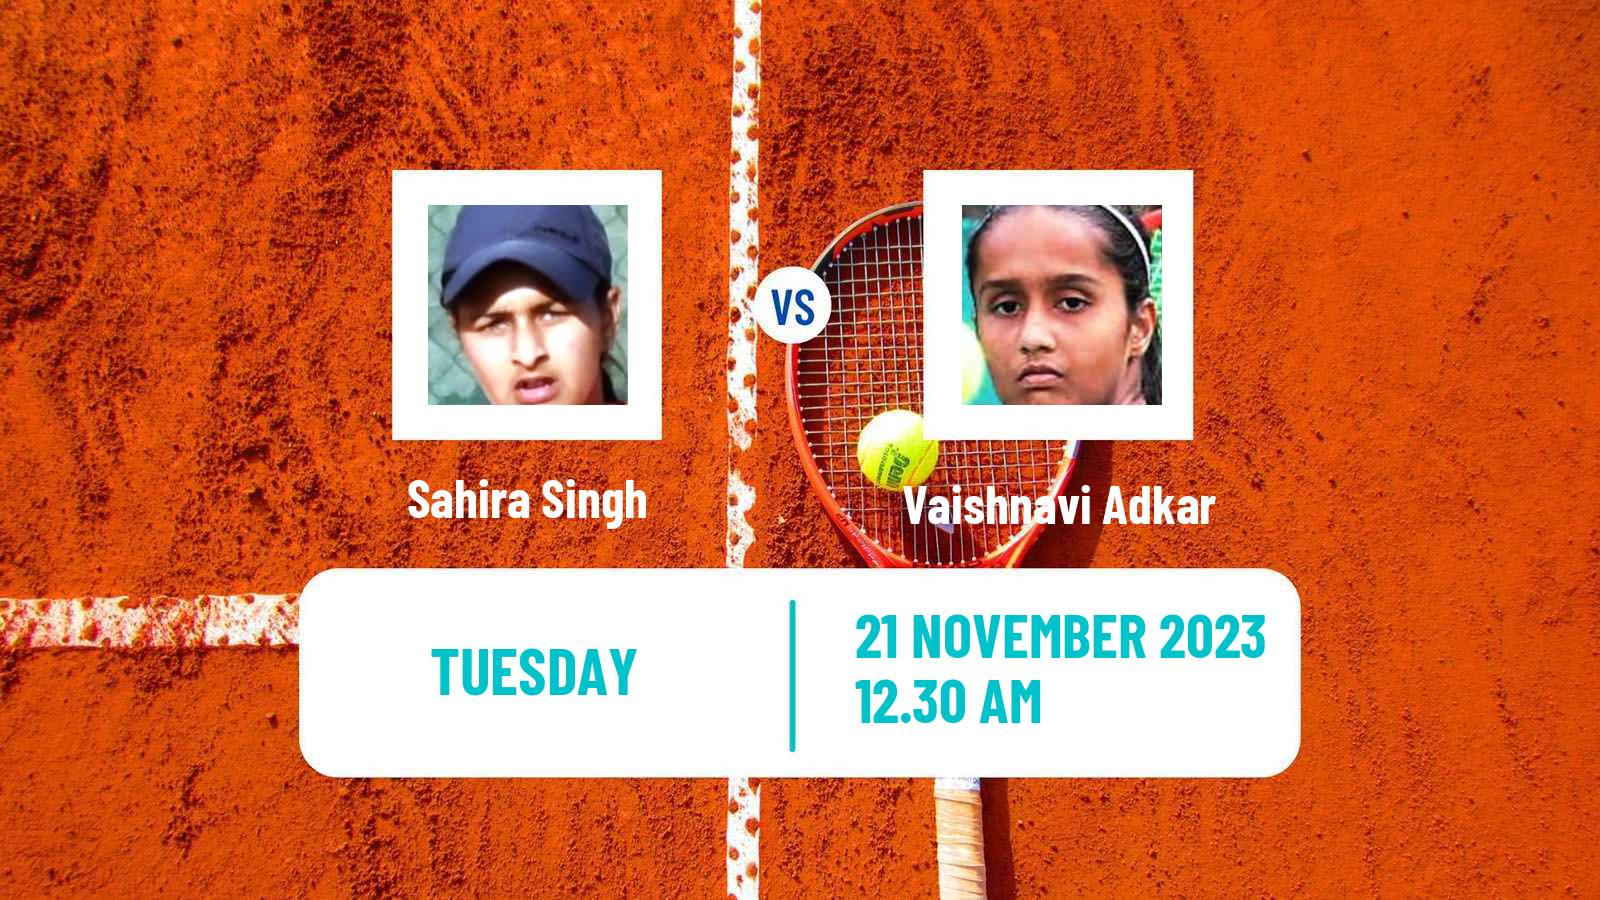 Tennis ITF W25 Bengaluru 2 Women Sahira Singh - Vaishnavi Adkar